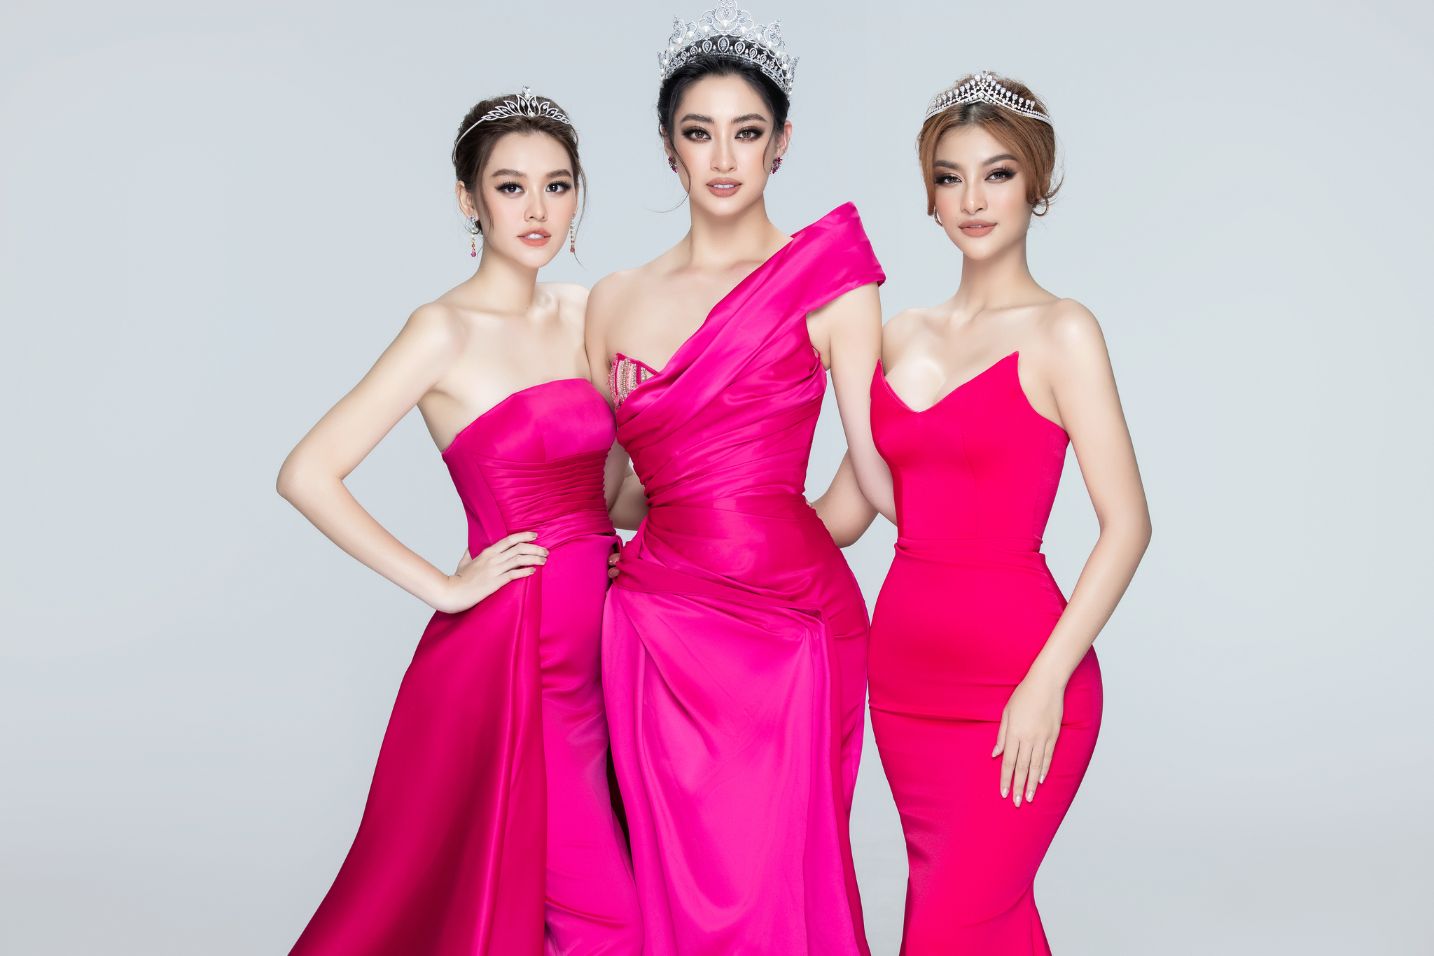 TOP 3 MWVN 2019 Top 3 Miss World Vietnam 2019 gây sốt với bộ ảnh tựa nữ thần trước khi kết thúc nhiệm kỳ